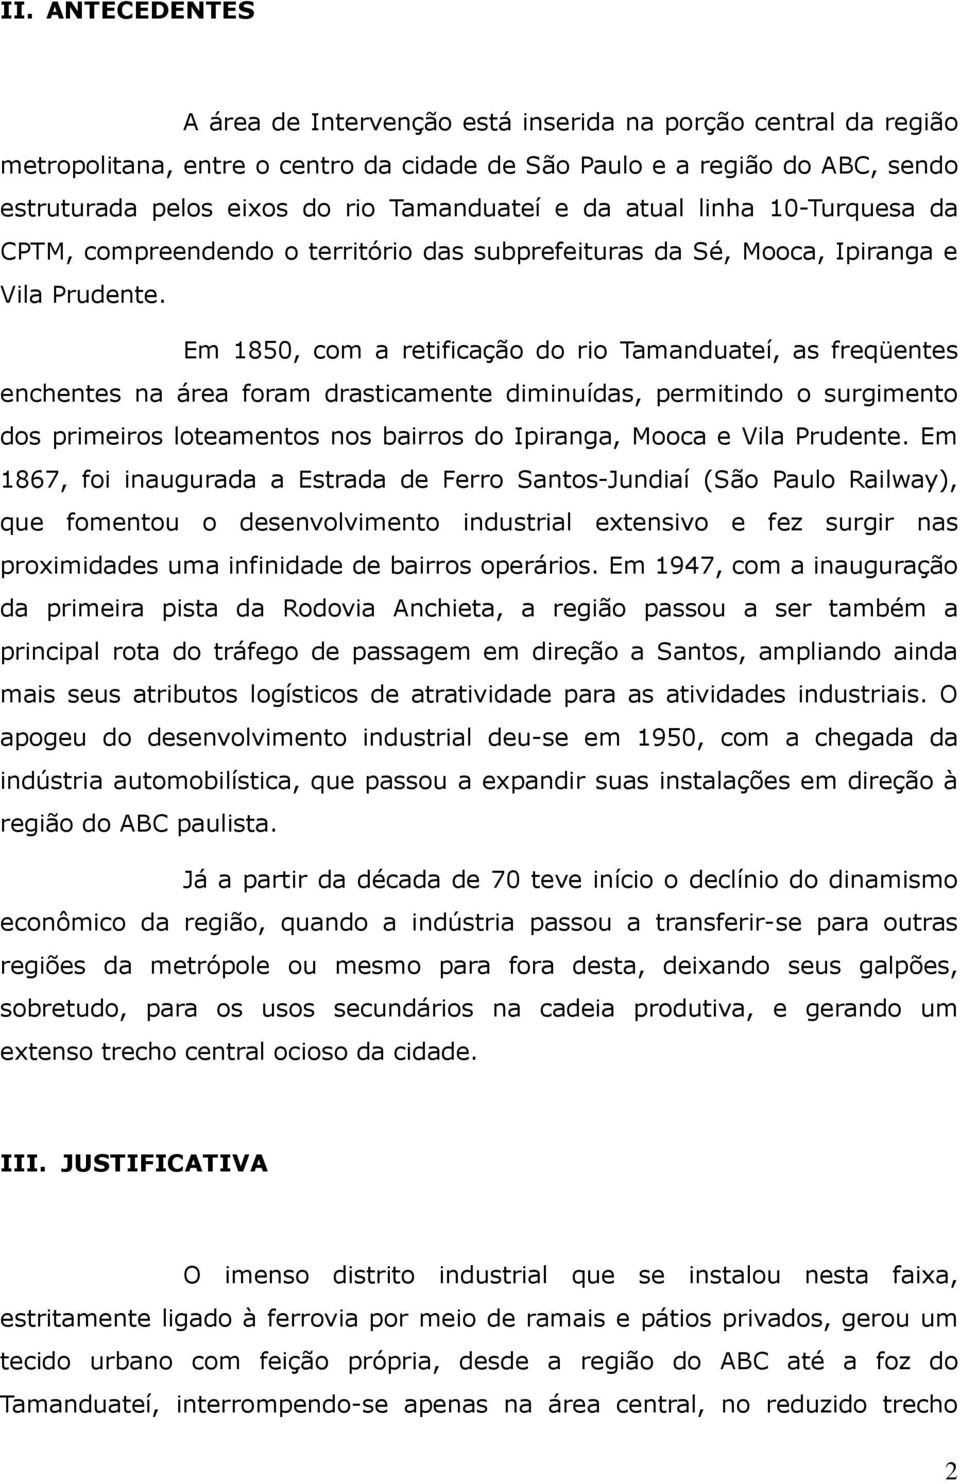 Em 1850, com a retificação do rio Tamanduateí, as freqüentes enchentes na área foram drasticamente diminuídas, permitindo o surgimento dos primeiros loteamentos nos bairros do Ipiranga, Mooca e Vila